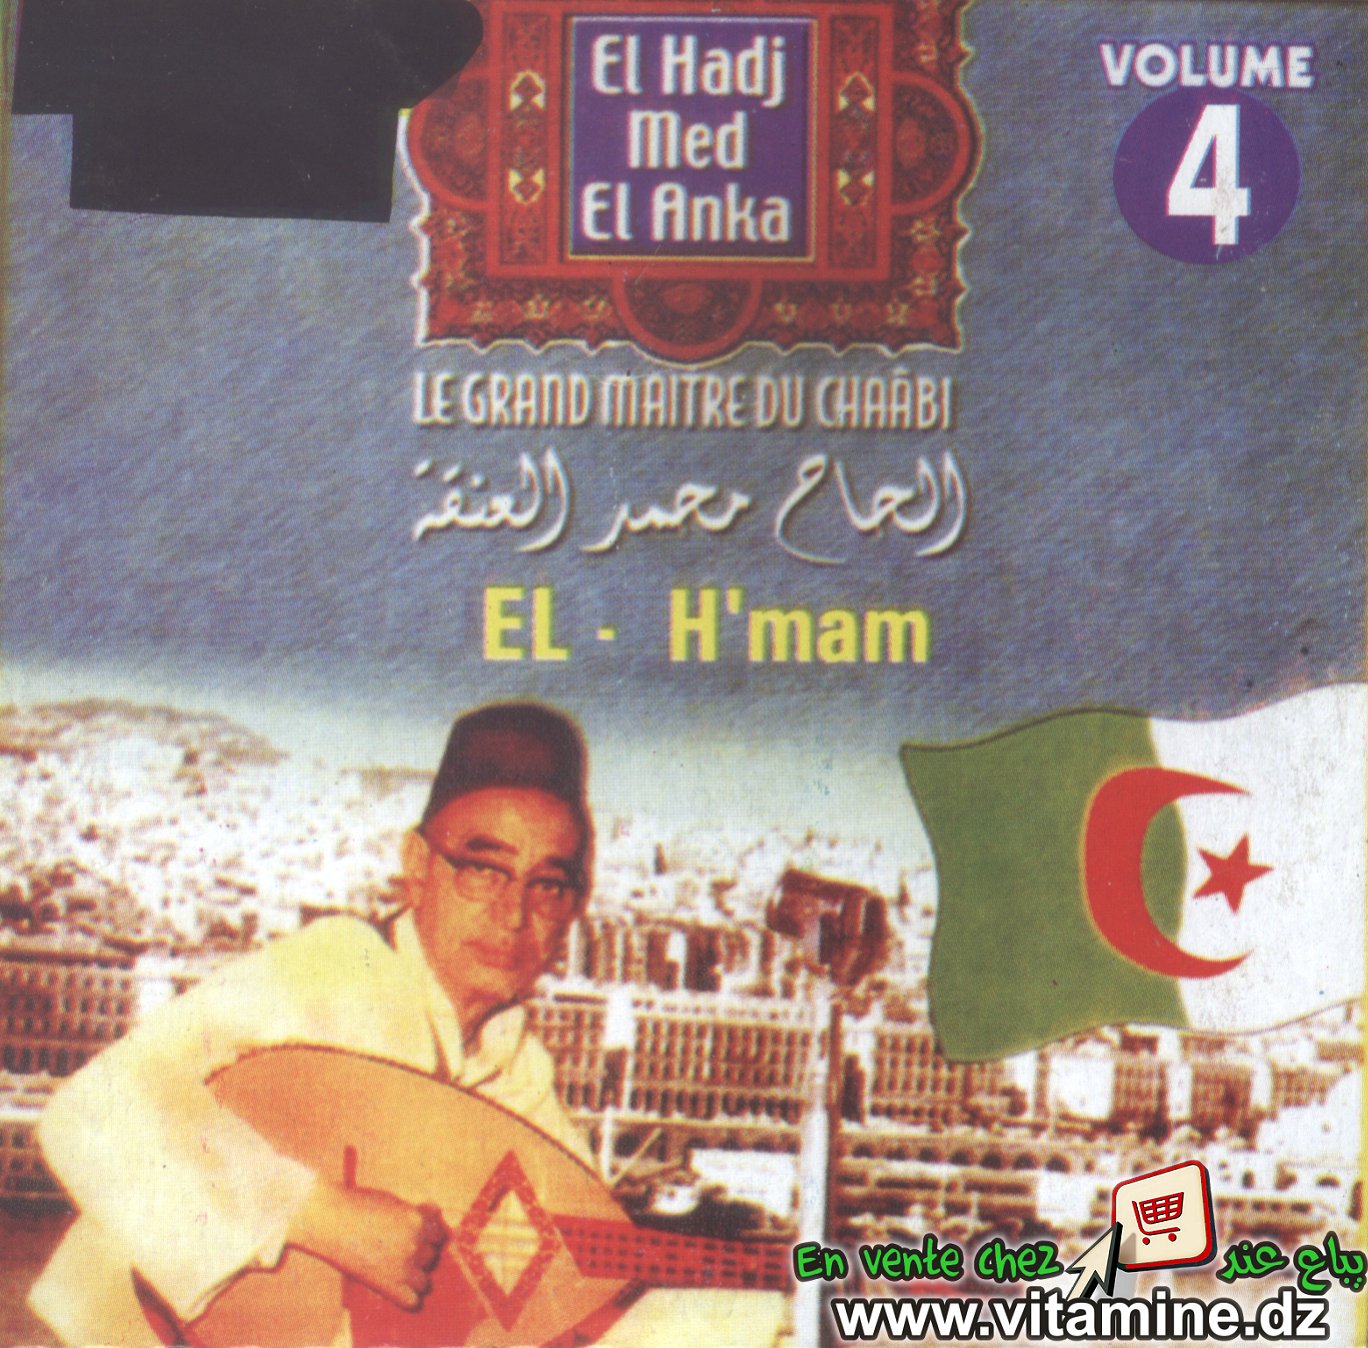 El Hadj M'Hamed El Anka vol 4